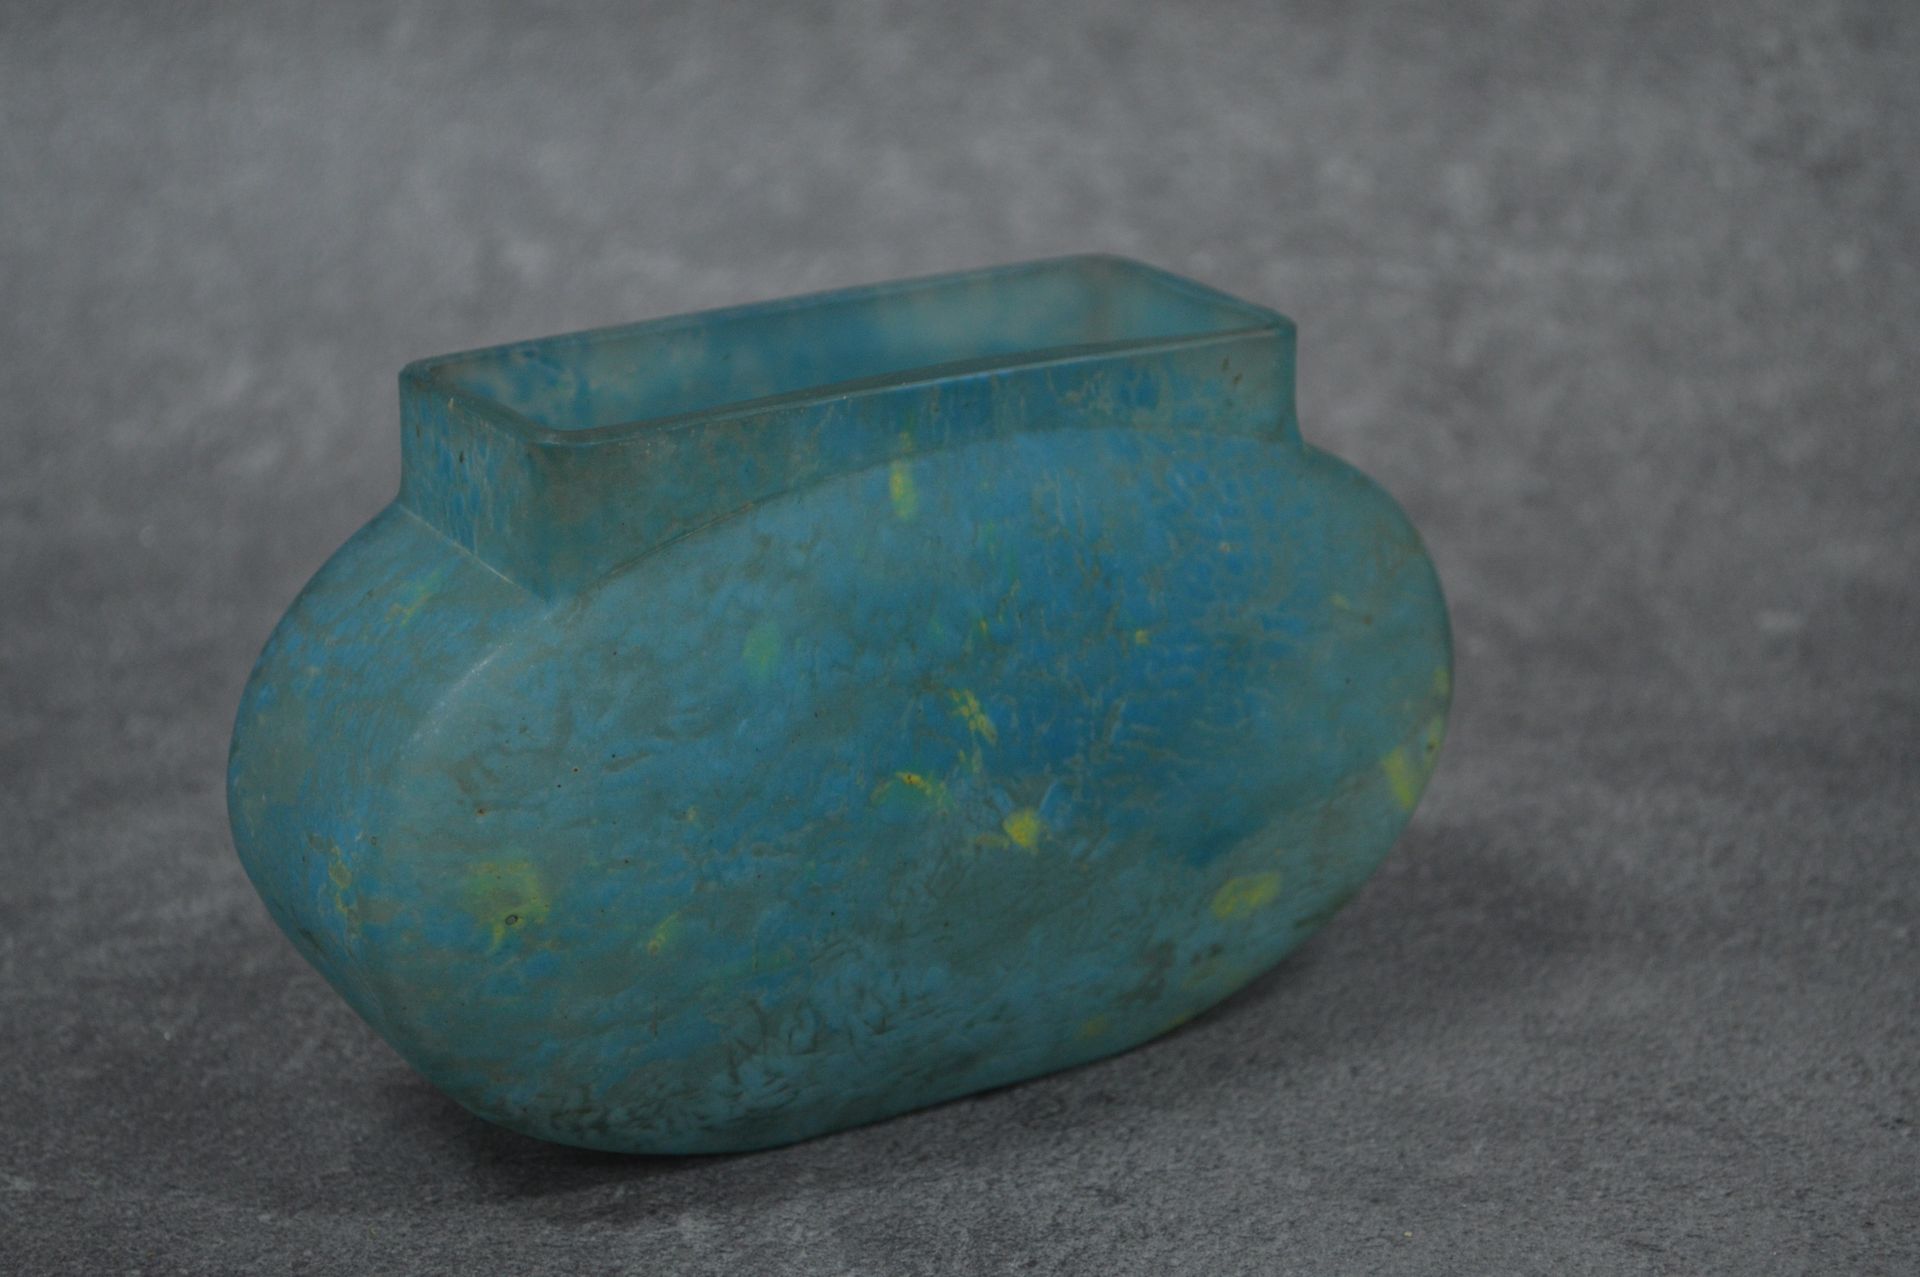 DAUM NANCY 
DAUM NANCY.花瓶脐带由大理石花纹玻璃制成，以蓝色为主色调。签名无法辨认。尺寸：18 x 8厘米。高度：11厘米